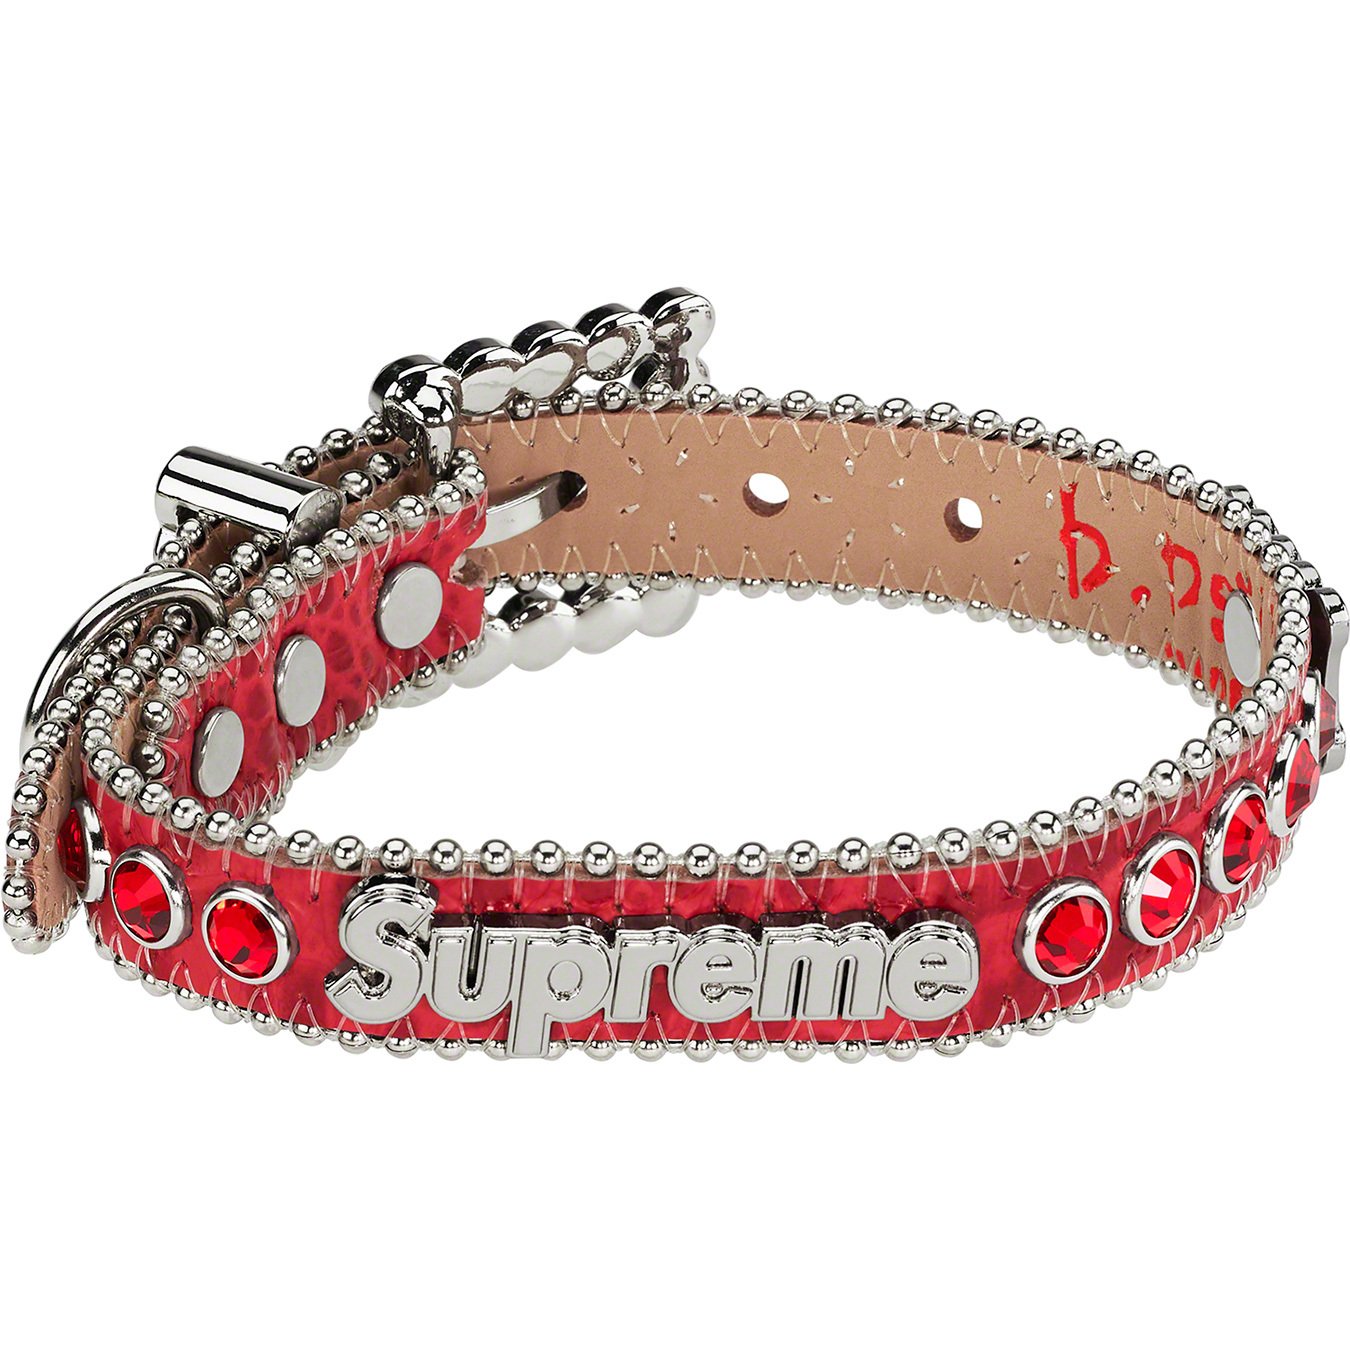 Supreme B.B. Simon Studded Dog Collar - Red